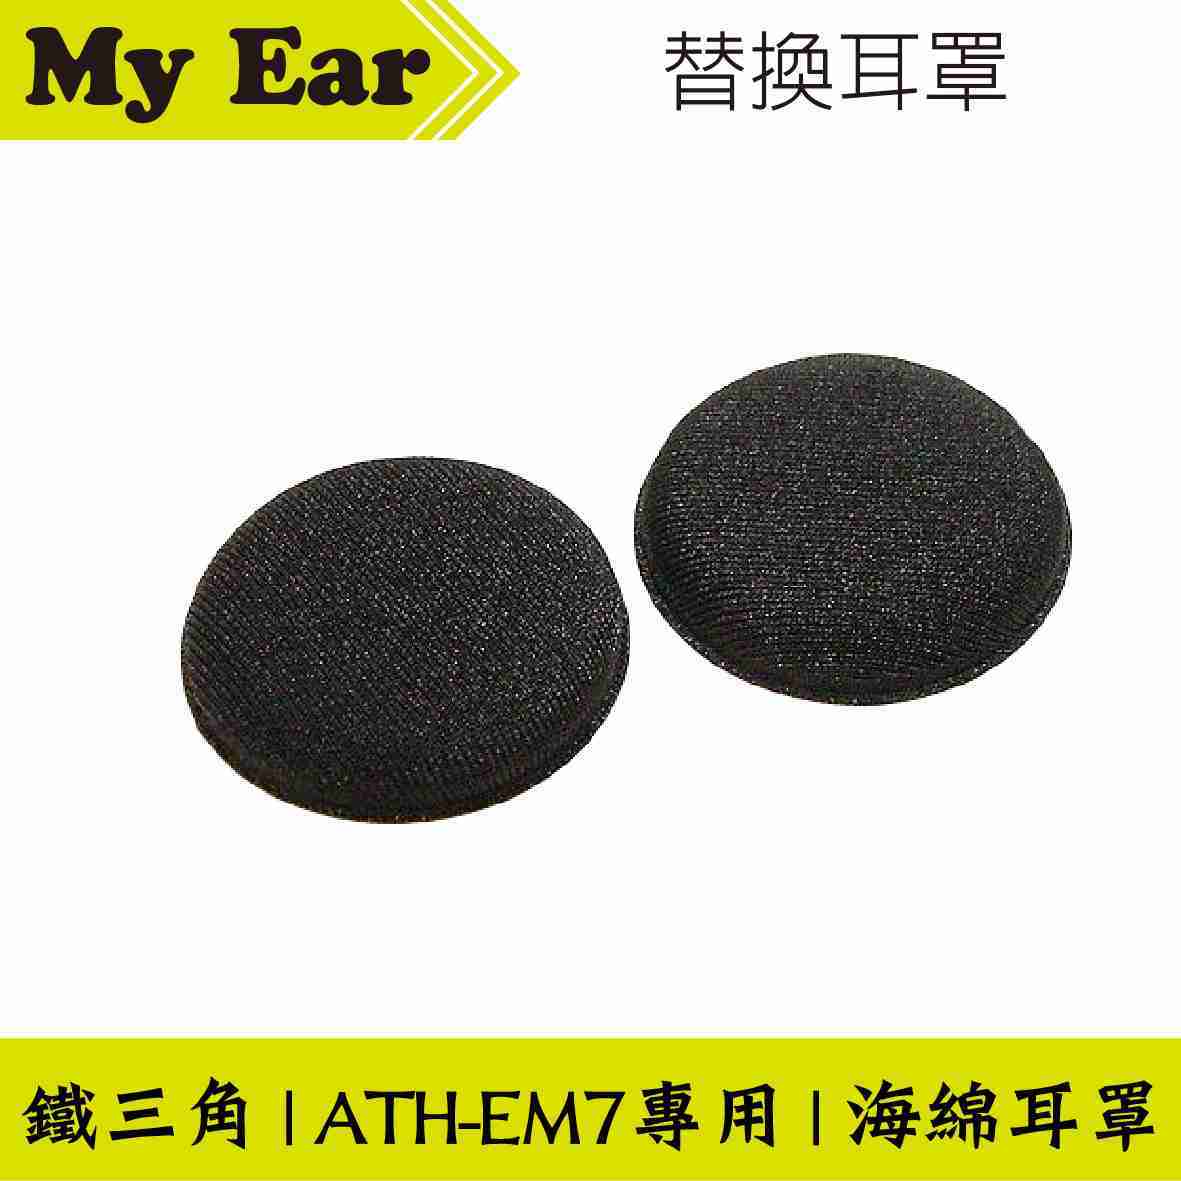 鐵三角 HP-EM7 原廠 海綿 替換耳罩 一對 ATH-EM7 用 | My Ear耳機專門店